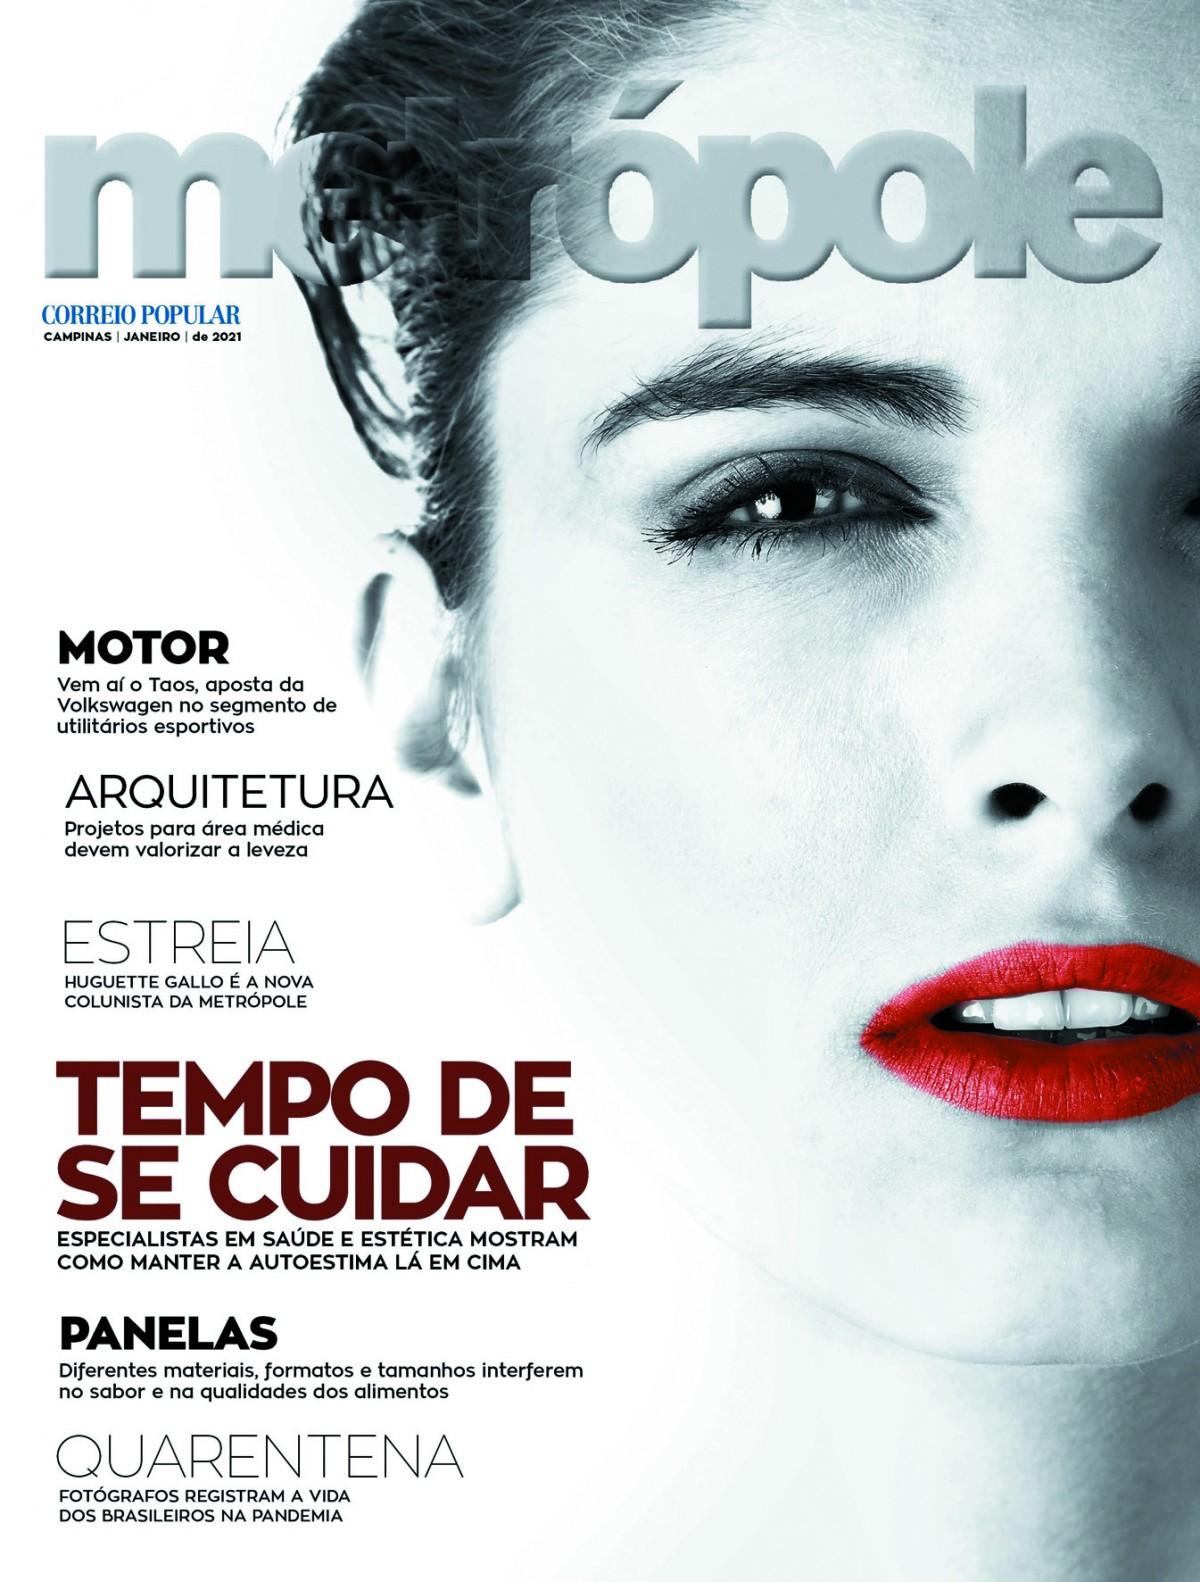 Revista Metropole, janeiro de 2021 (Importação)